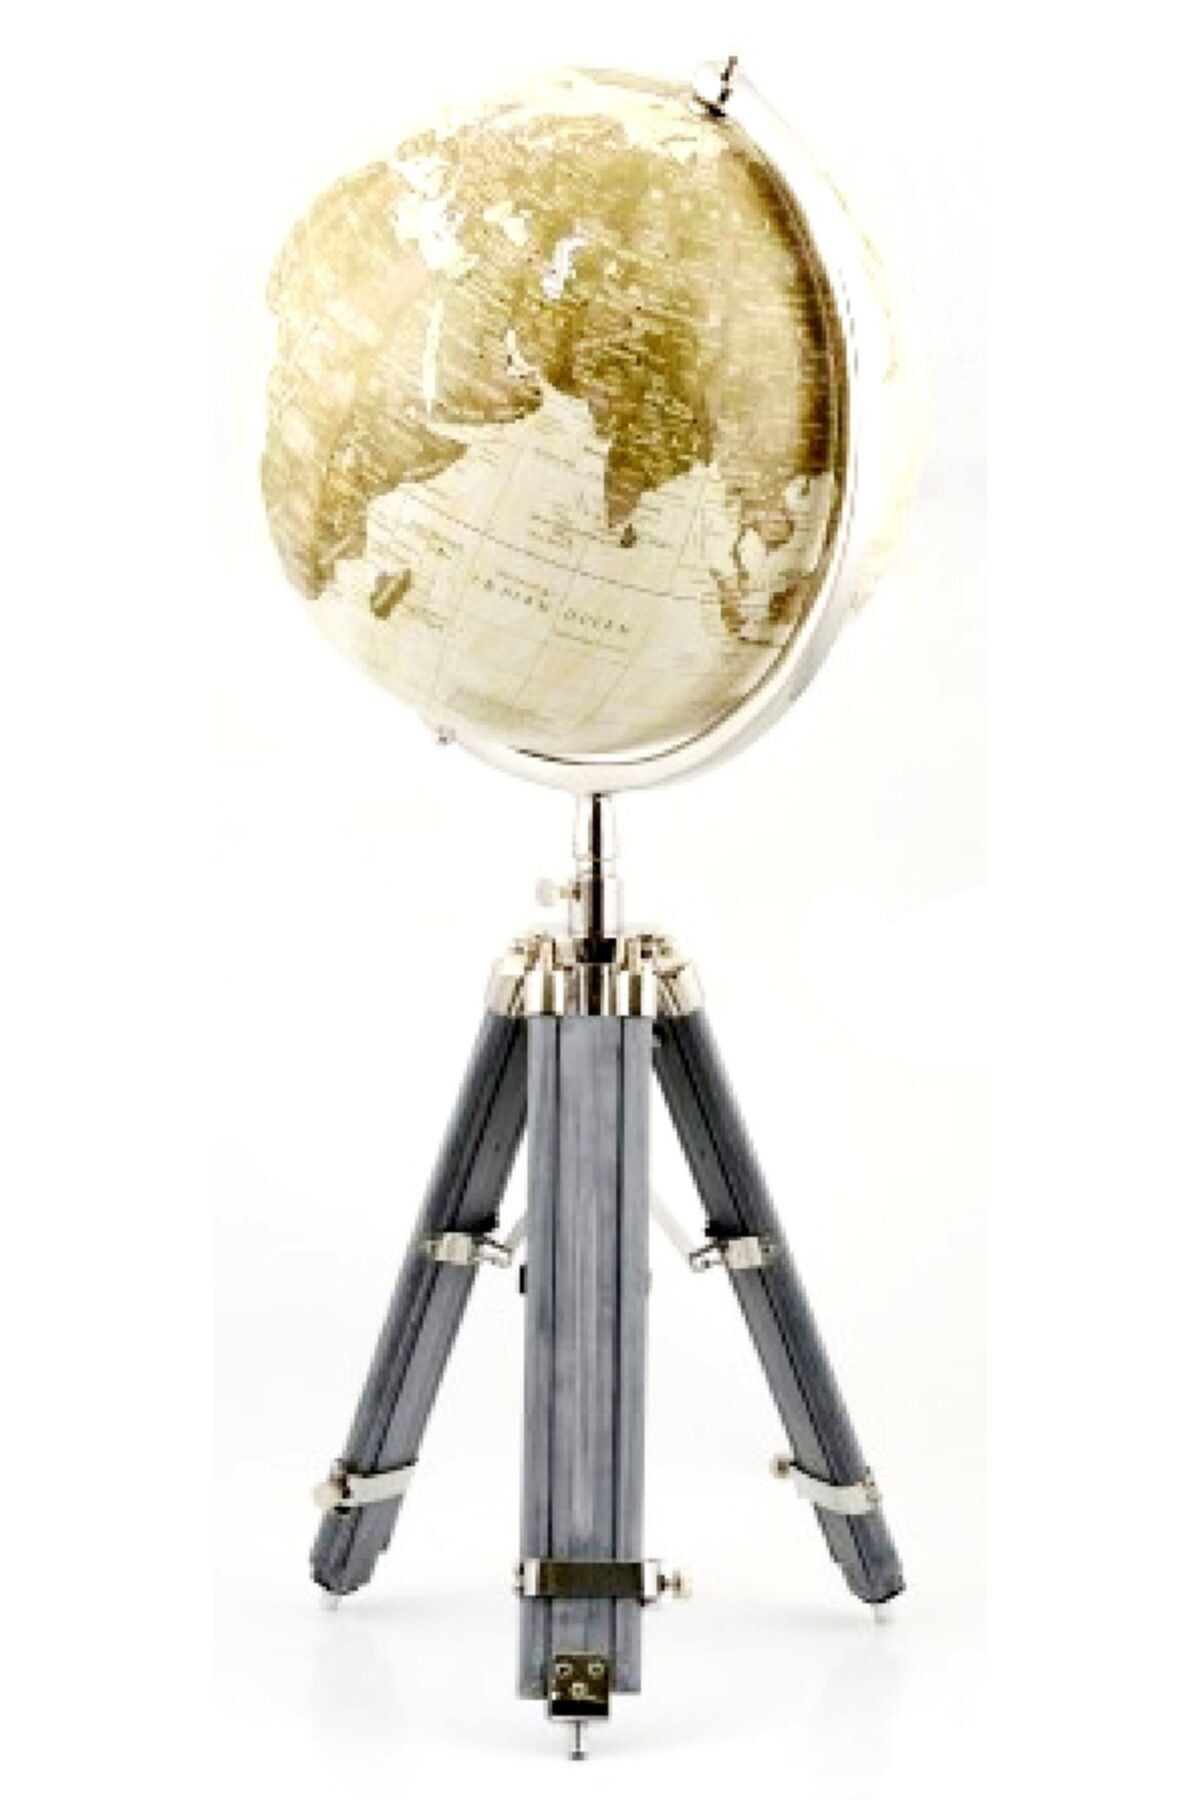 Mixperi Dönen Dünya Küre - 12 Inç Dekoratif Dünya Haritası